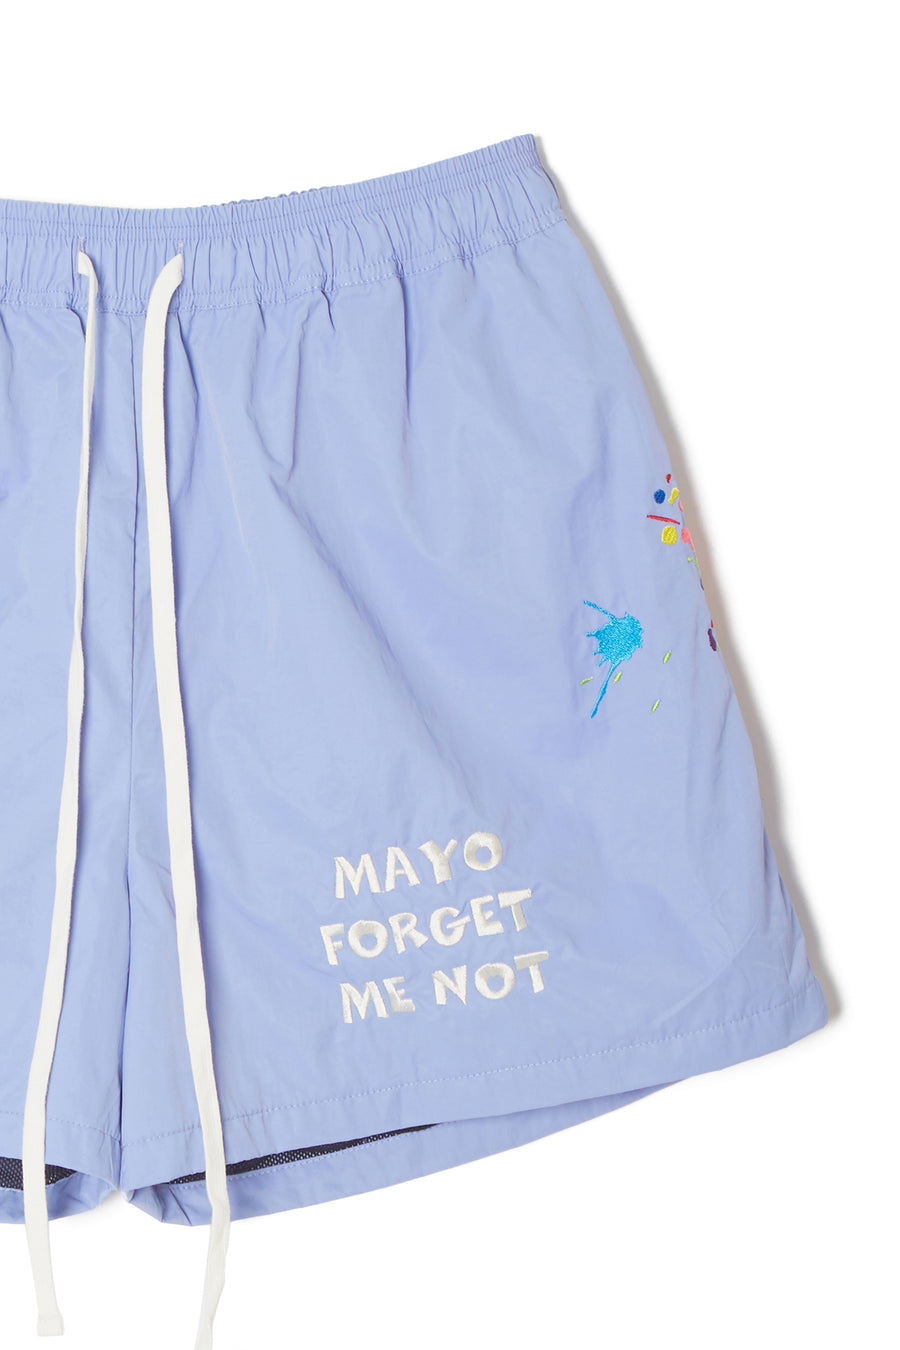 MAYO PAINT Embroidery Swim Shorts - PURPLE